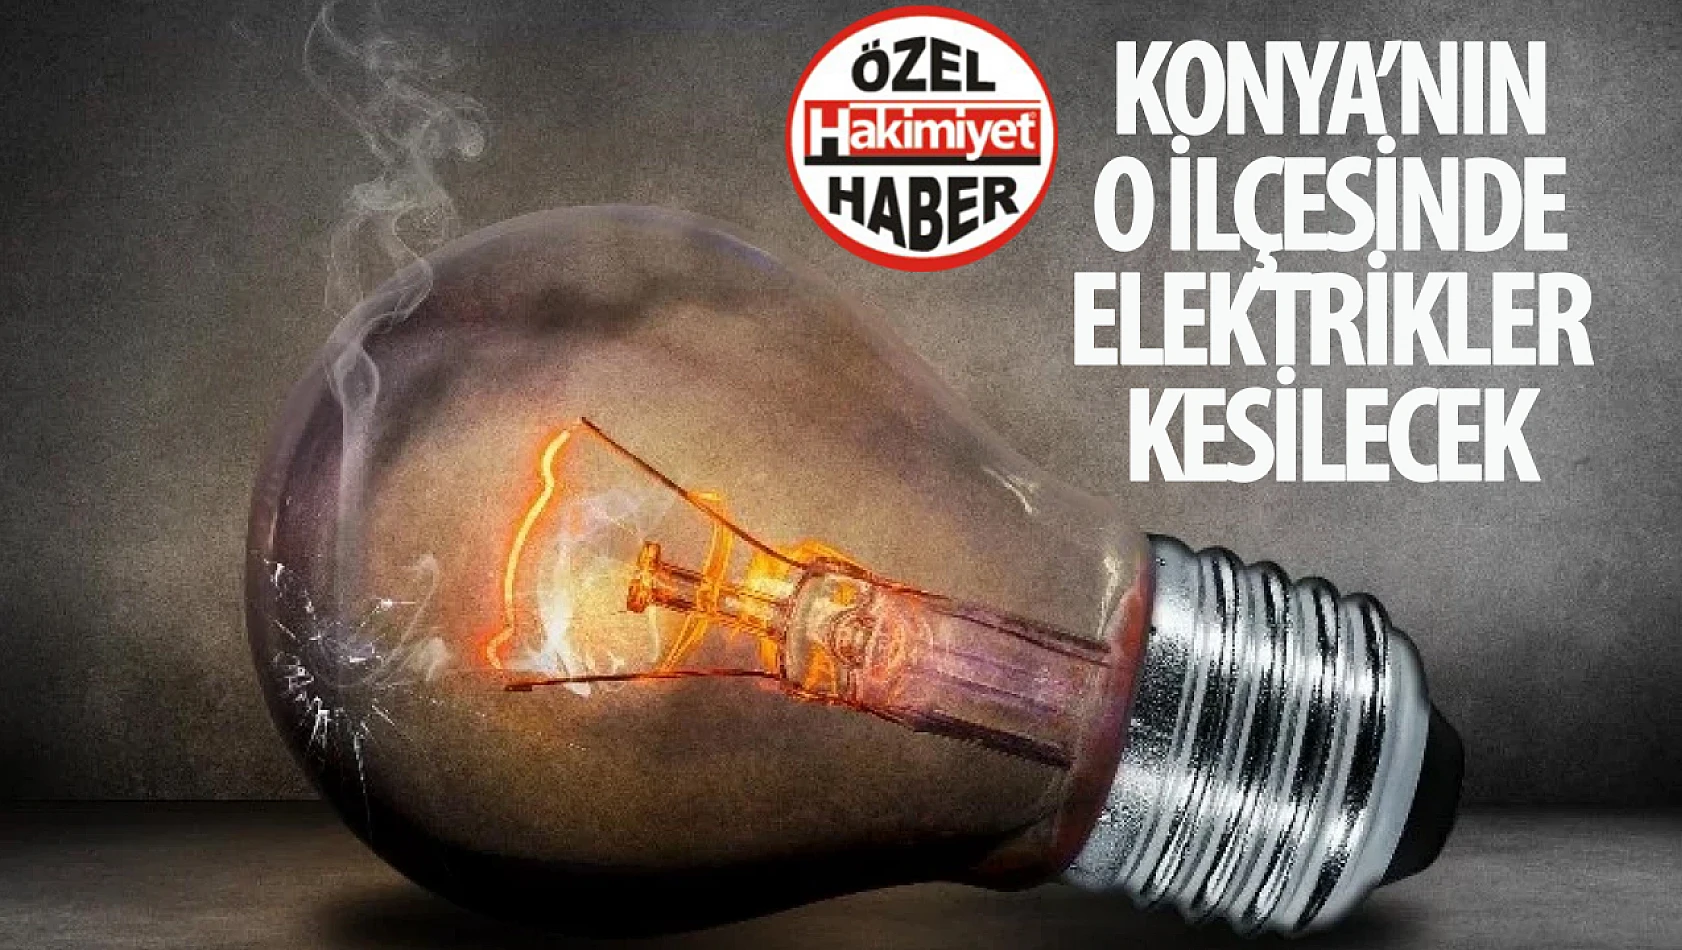 Konya'nın o ilçesinde elektrik kesintisi!